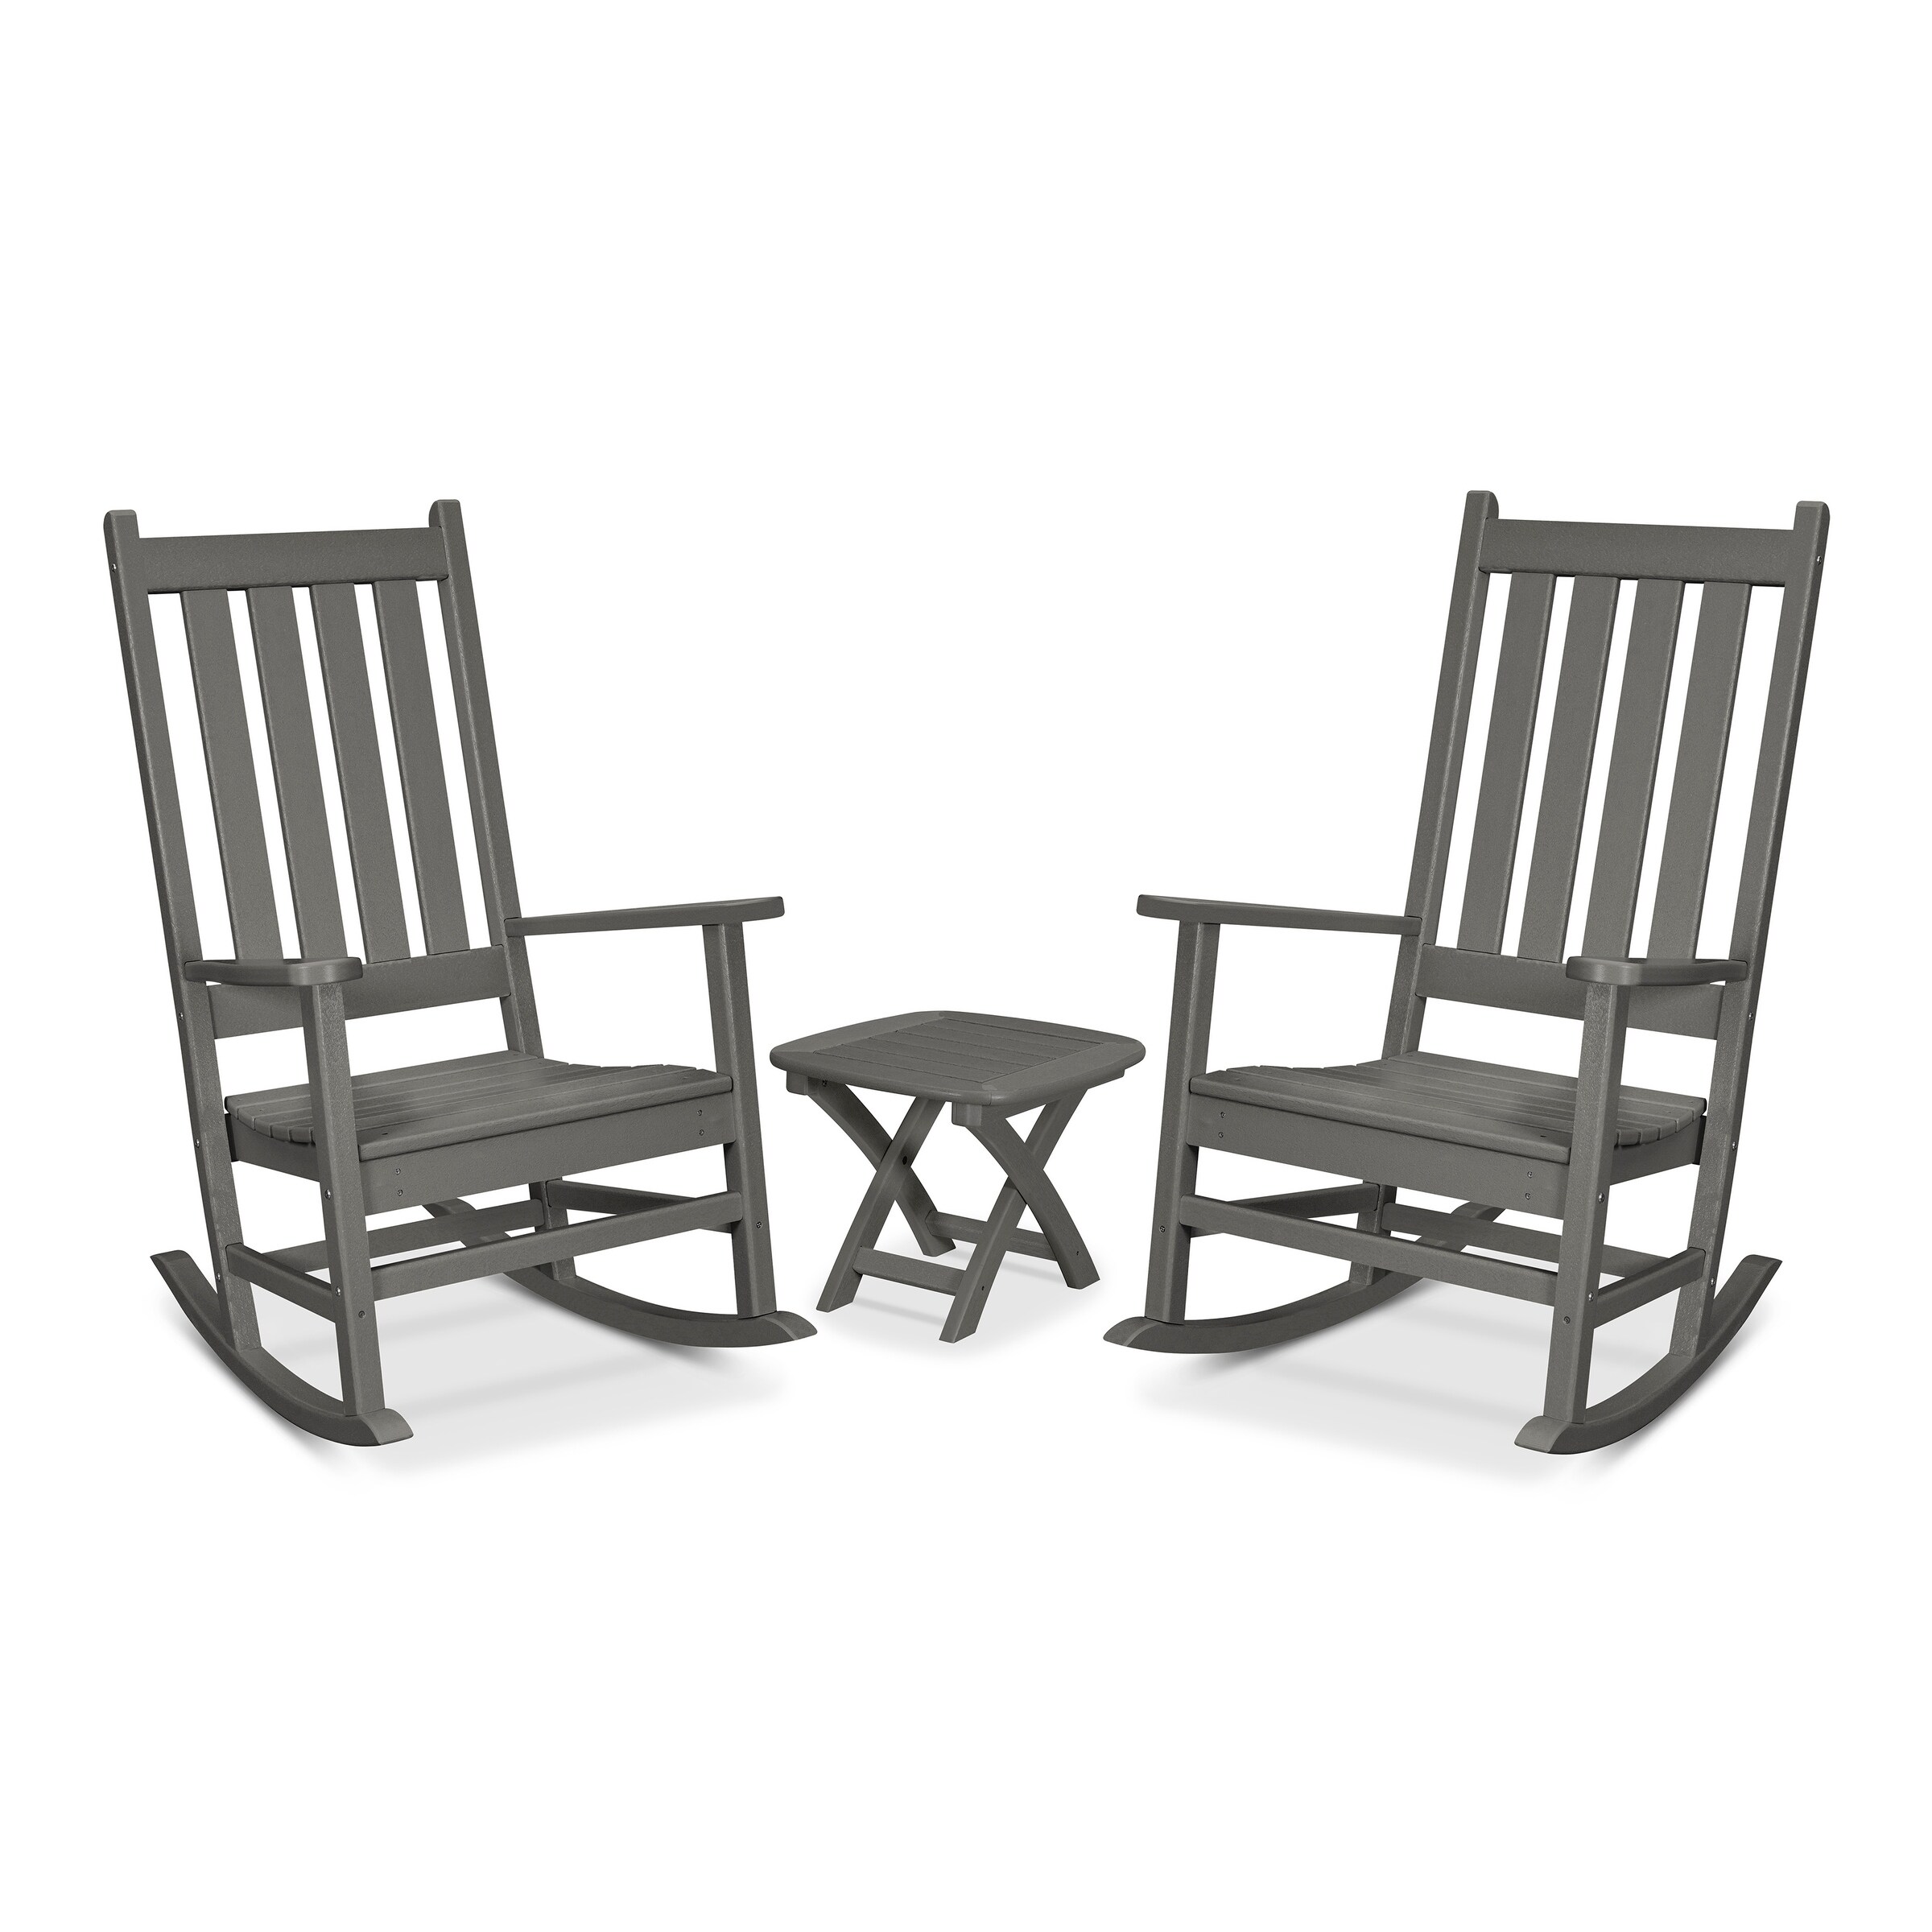 Trex Outdoor Furniture Cape Cod 3-piece Porch Rocking Chair Set